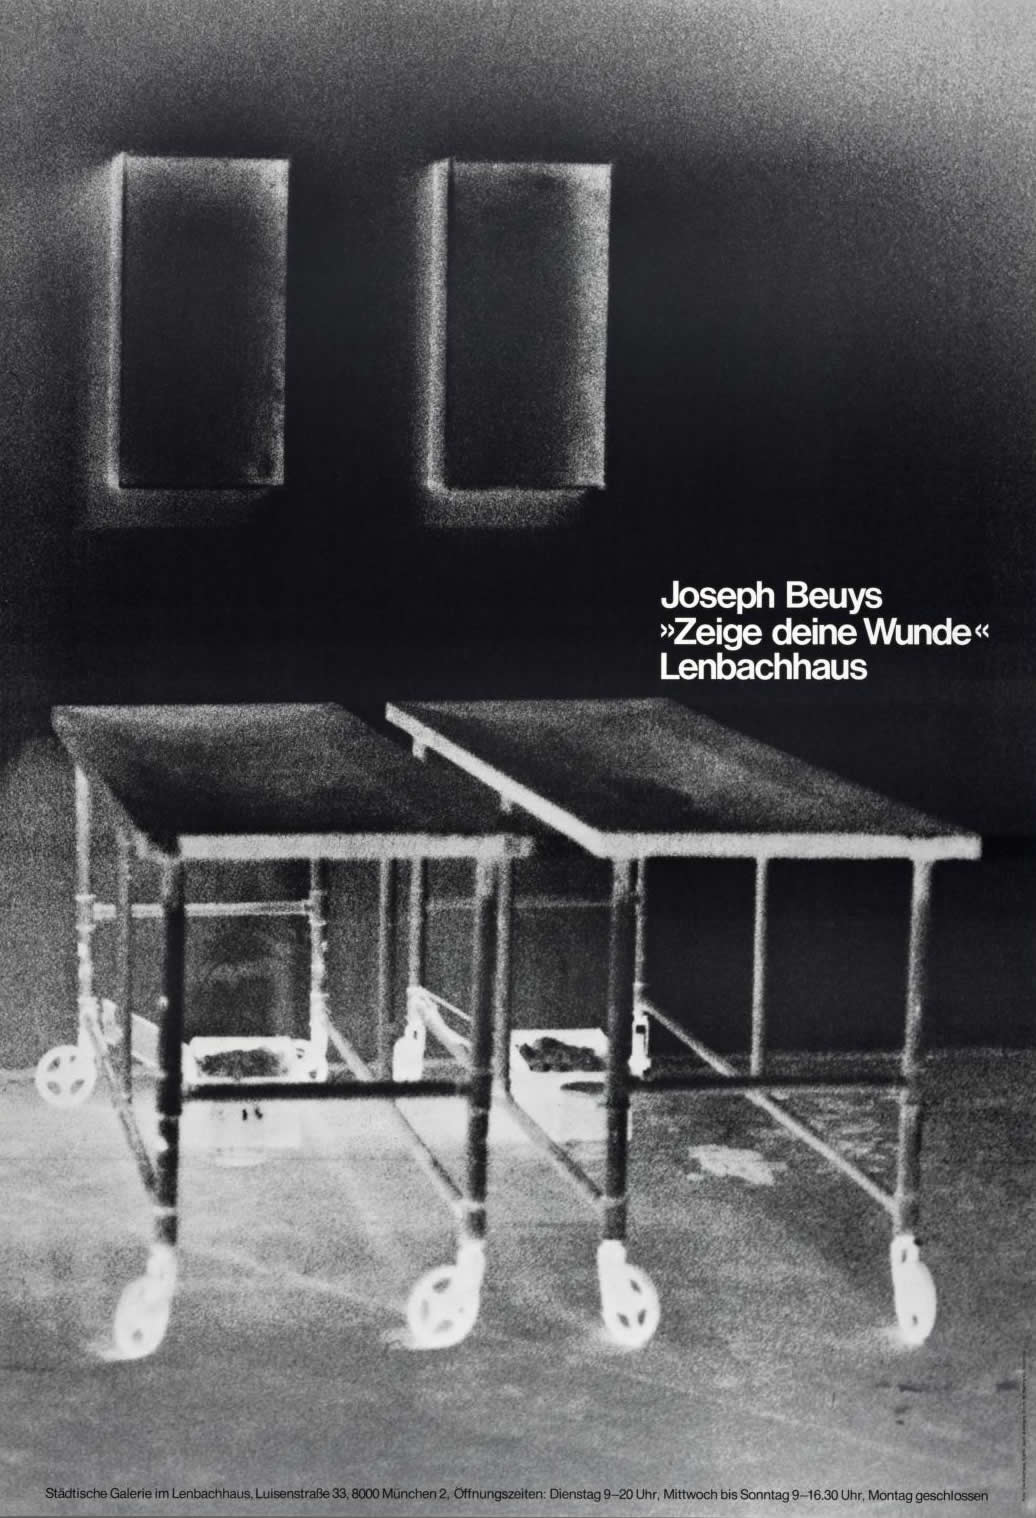 Joseph Beuys: Zeige deine Wunde. 1980